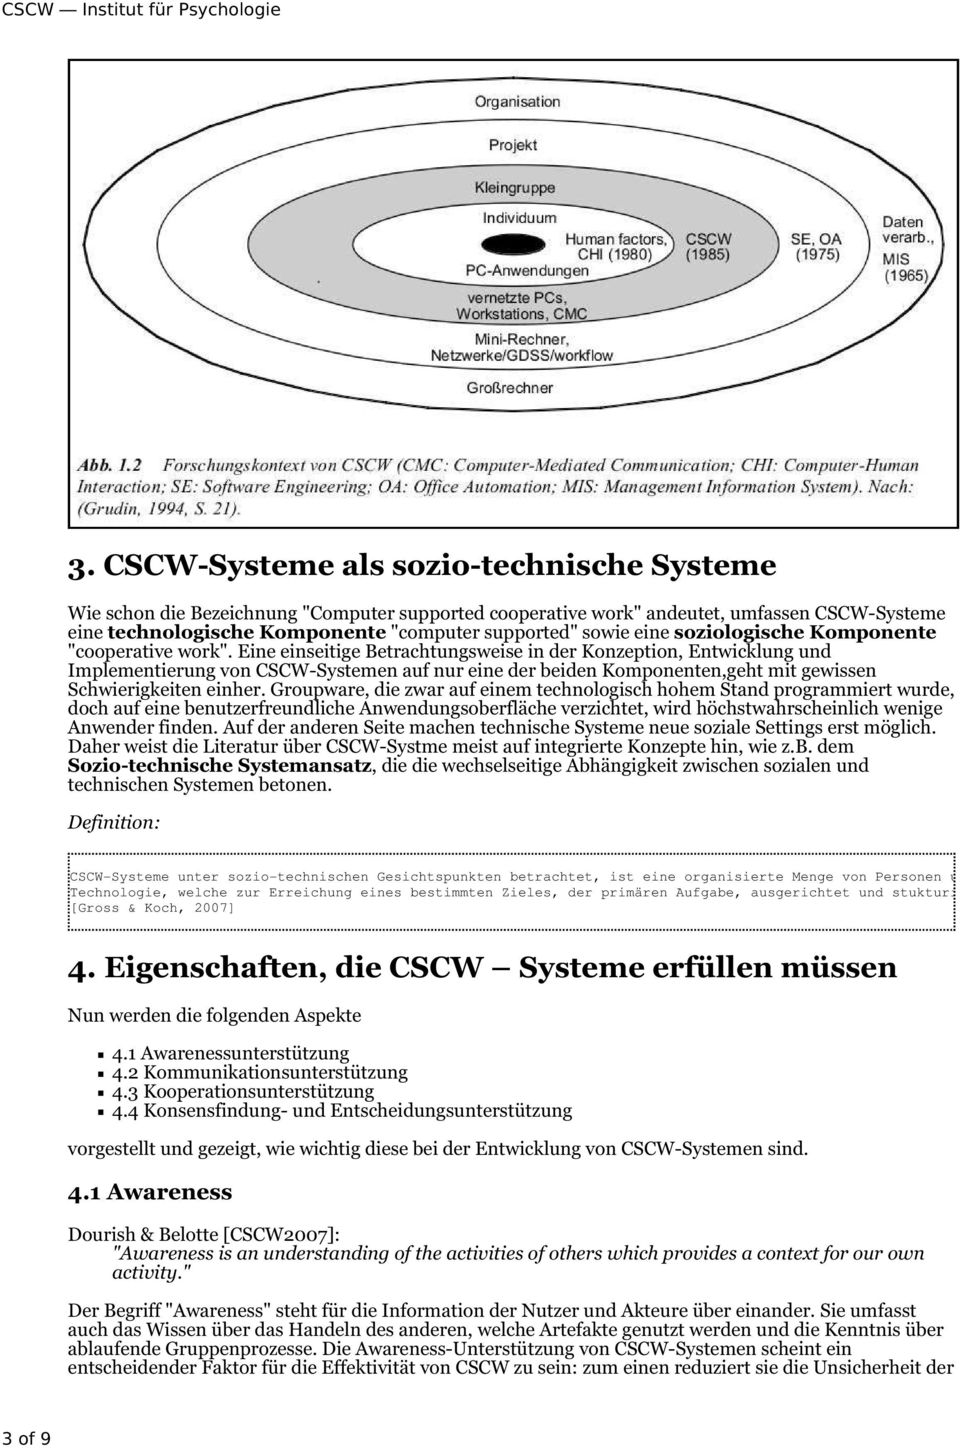 Eine einseitige Betrachtungsweise in der Konzeption, Entwicklung und Implementierung von CSCW-Systemen auf nur eine der beiden Komponenten,geht mit gewissen Schwierigkeiten einher.